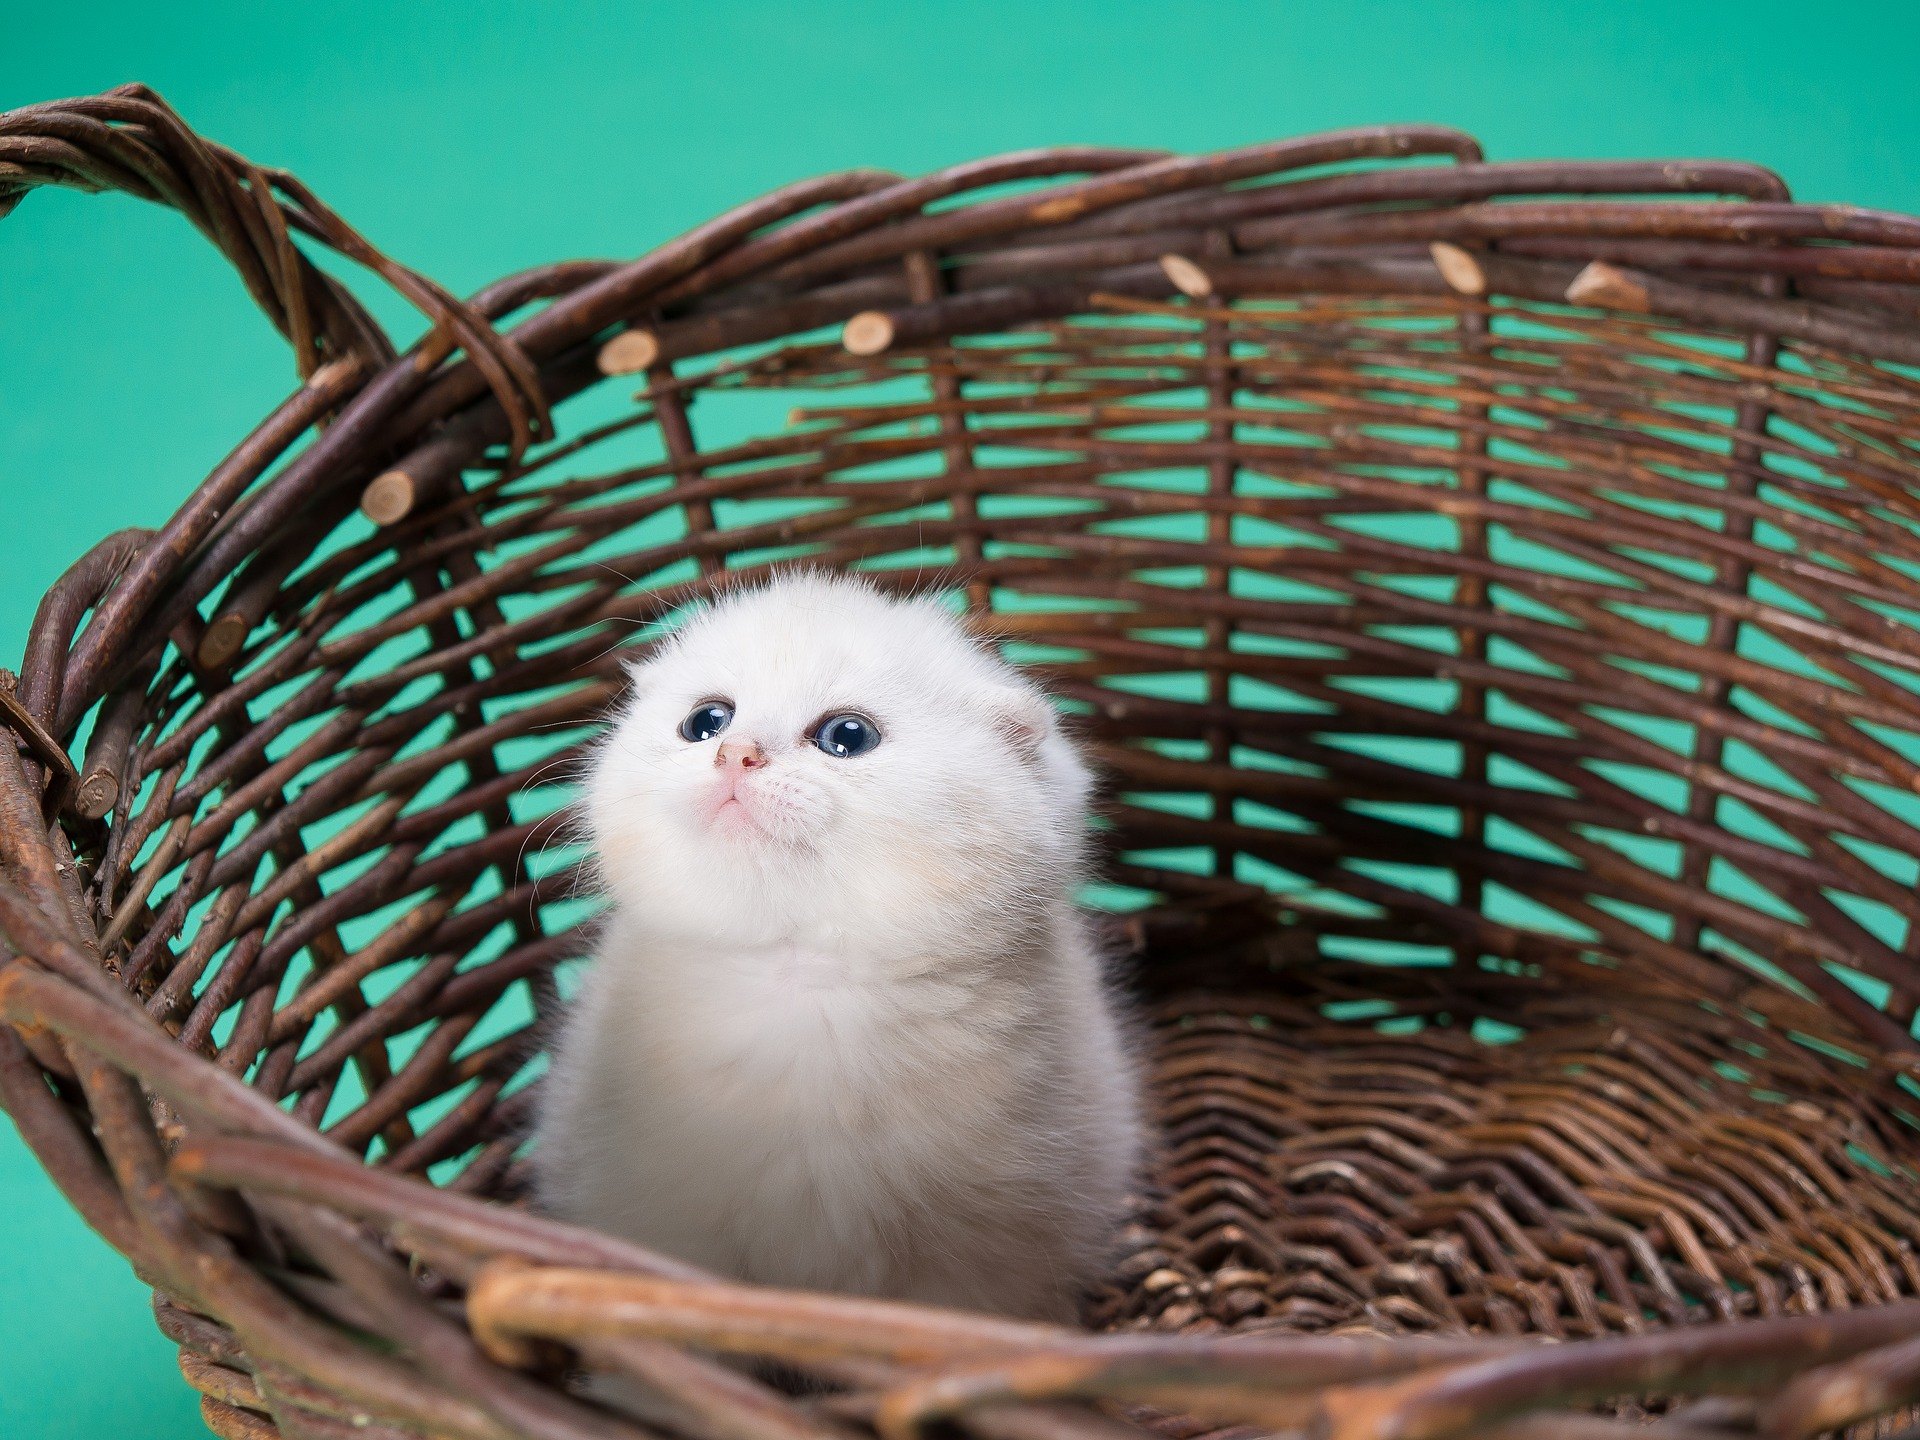 Výbavička pro kočku se skládá z věcí, které slouží k pohodlí zvířete a majitele. Co se oplatí koupit?